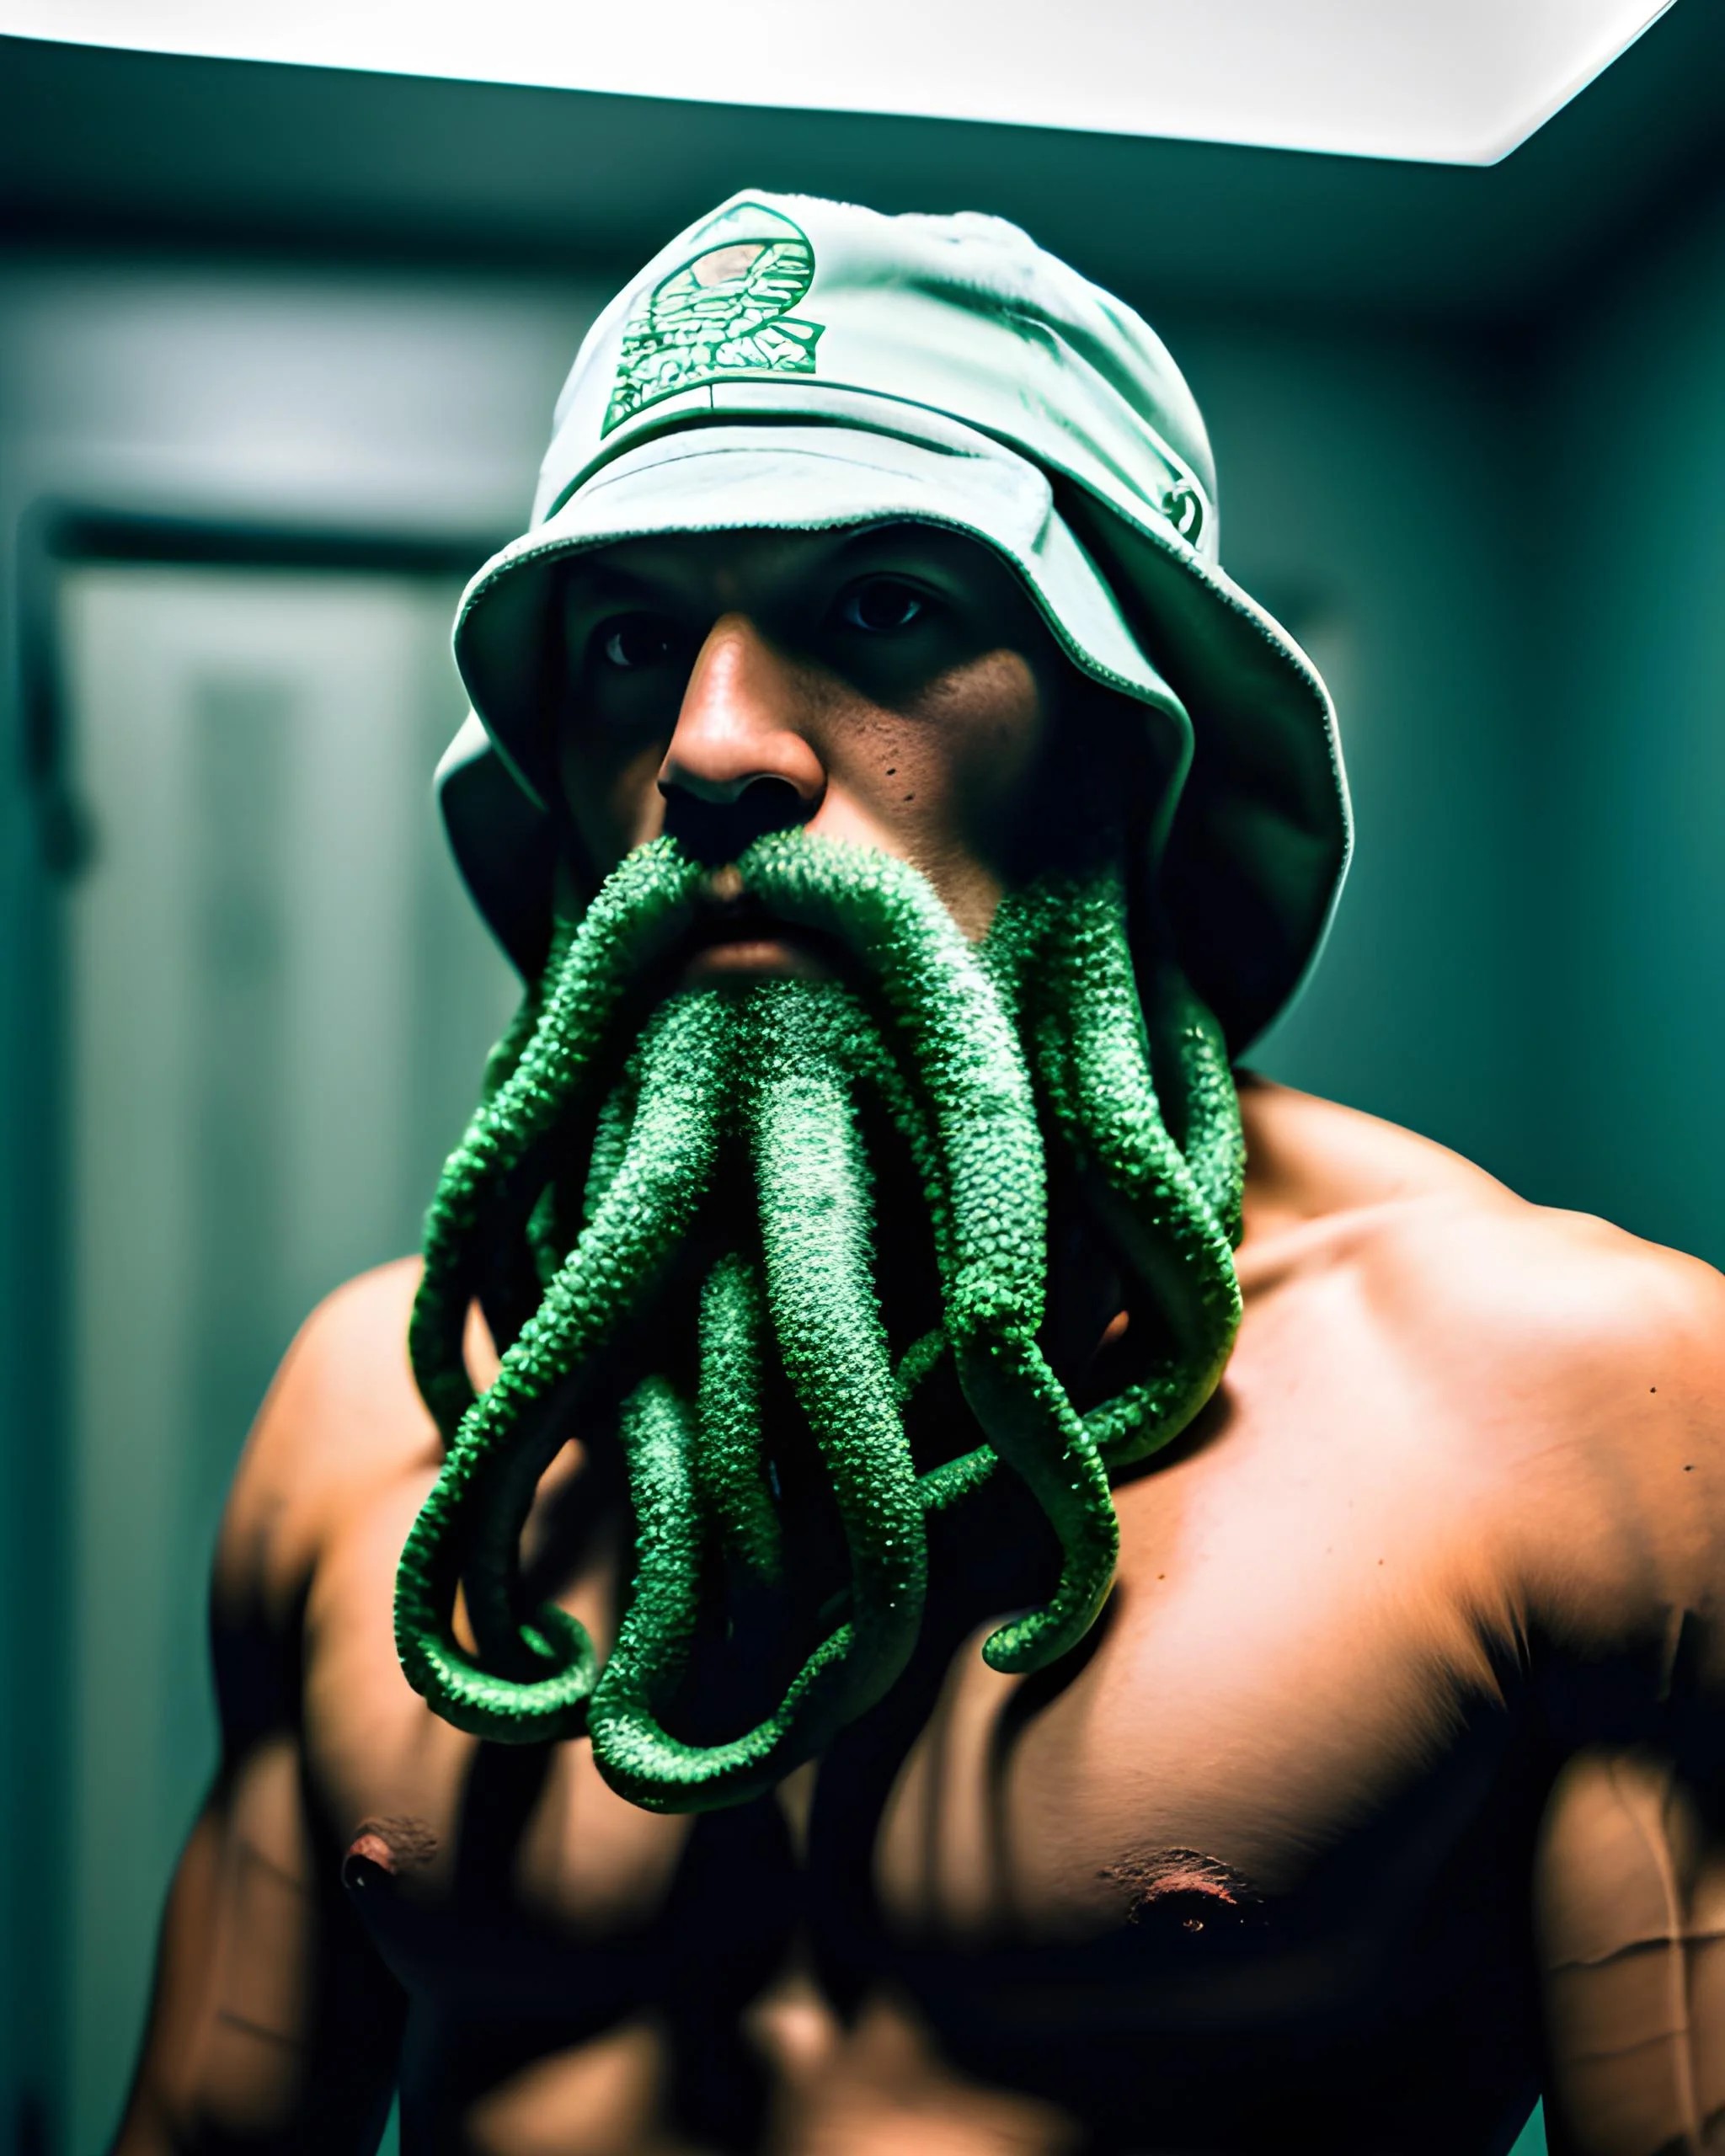 Immagine generata dall'AI di un uomo con tentacoli come barba generata tramite starryai